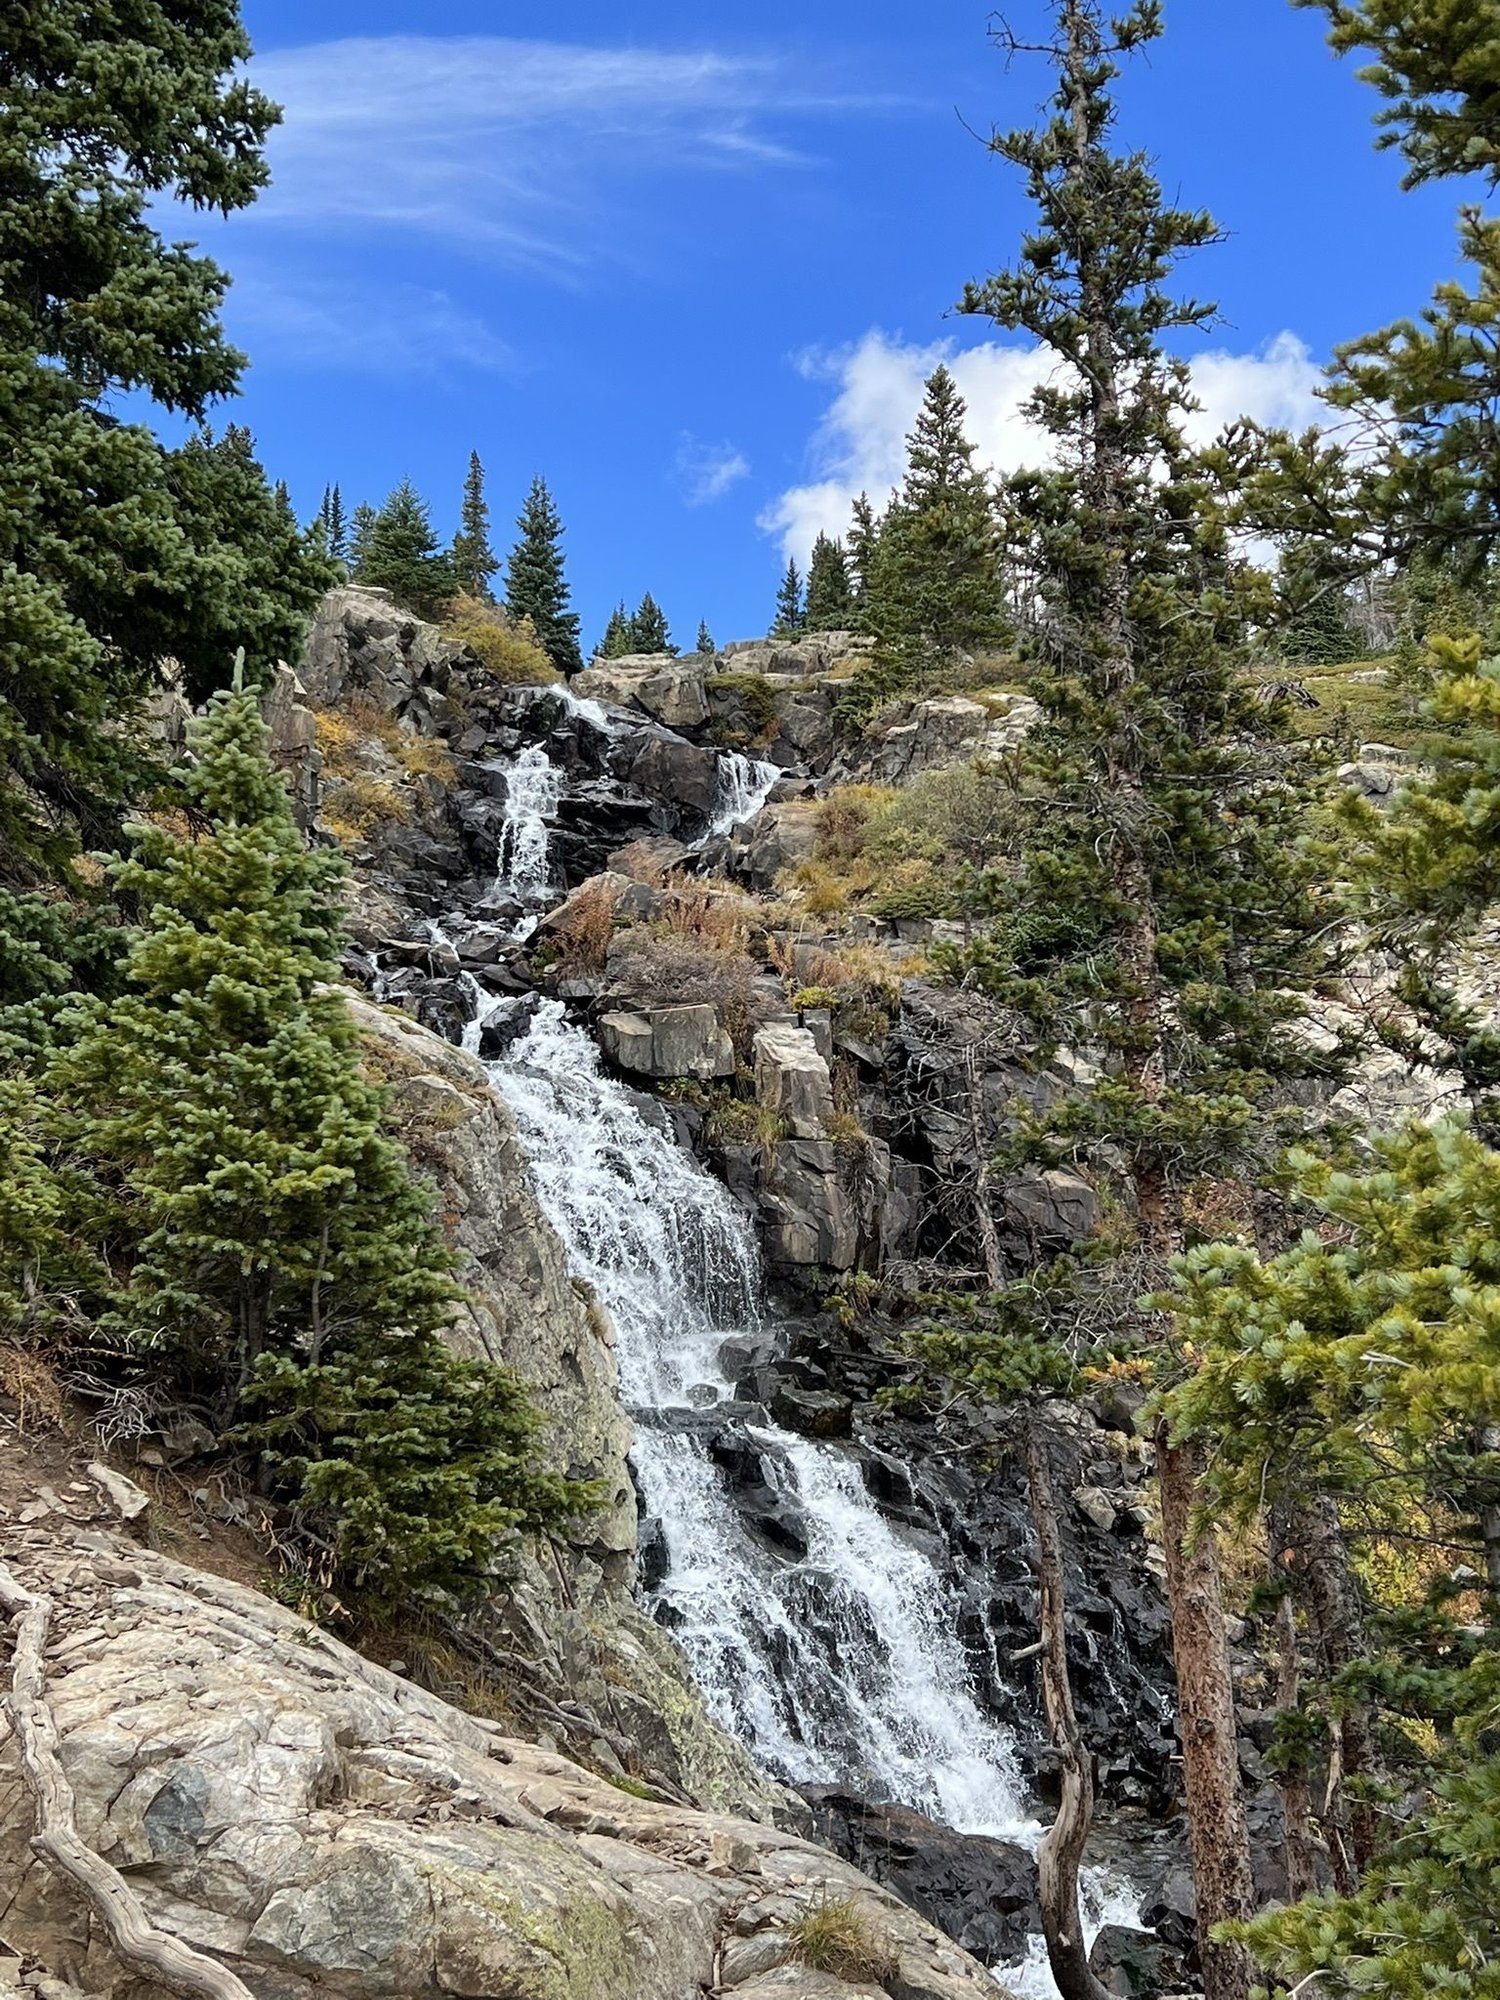 Mohawk Lakes & Continental Falls Hiking Trail in Breckenridge, Colorado